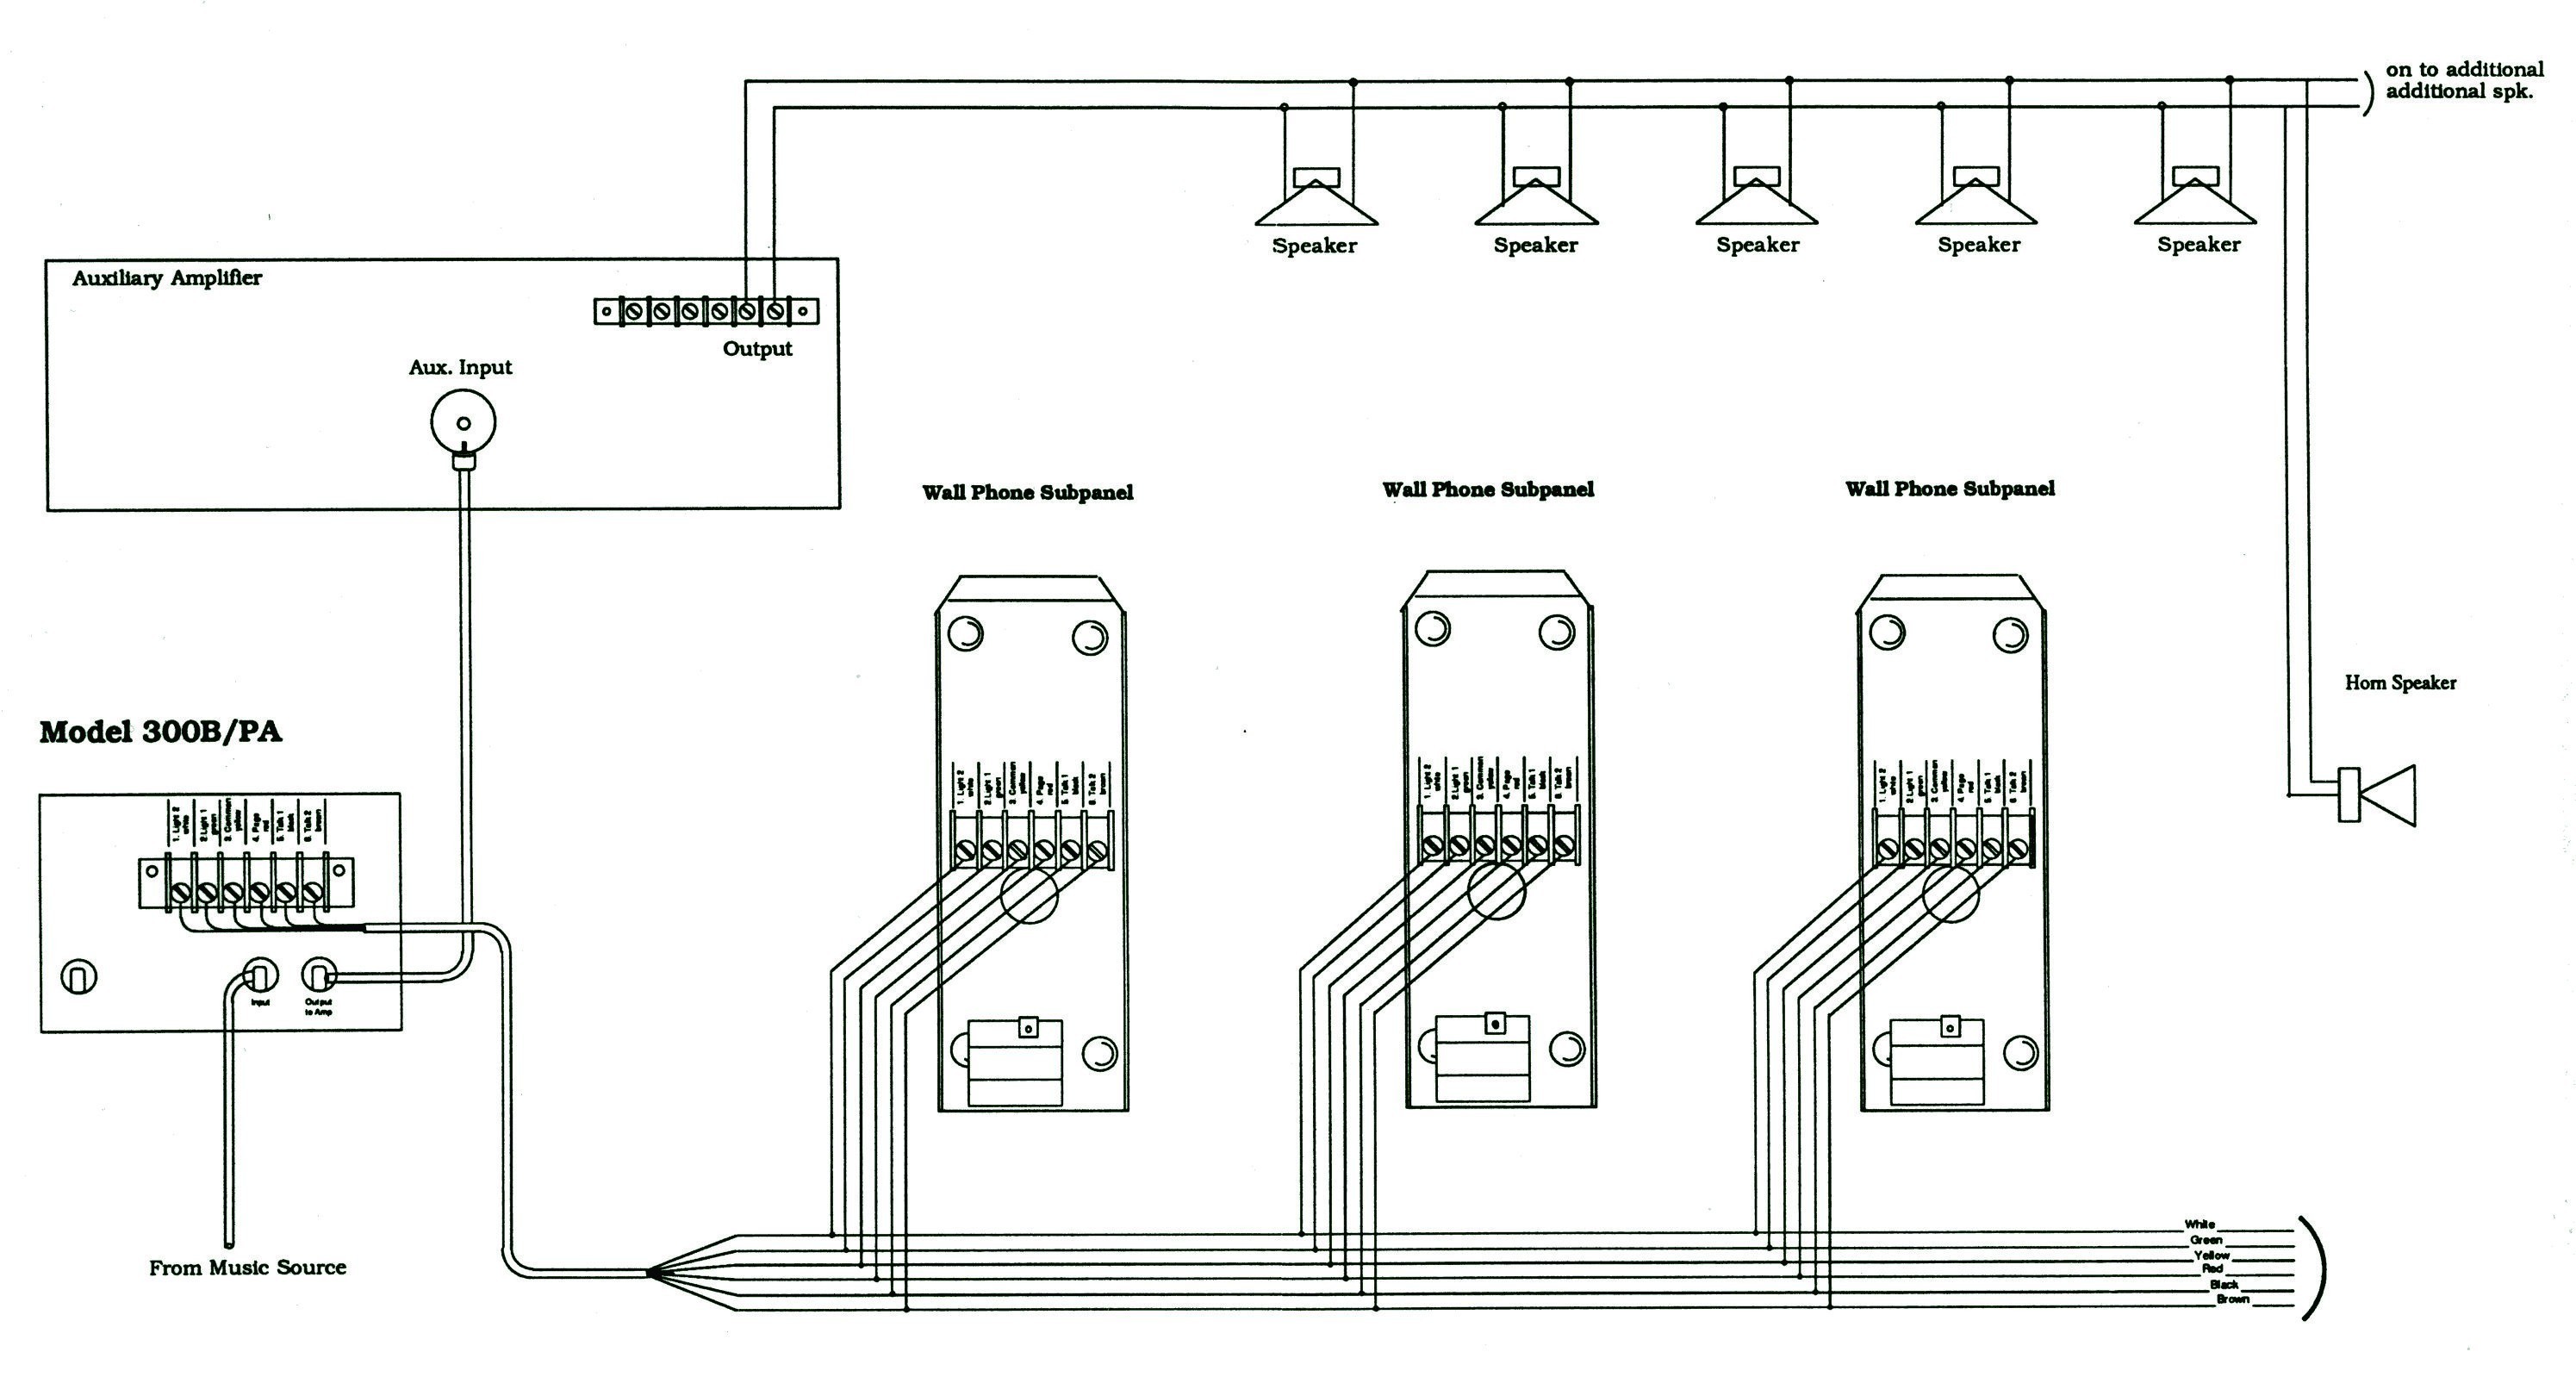 Speaker Wiring Diagram Series Vs Parallel New Speaker Wiring Diagram Series Vs Parallel Fresh Parallel Wiring